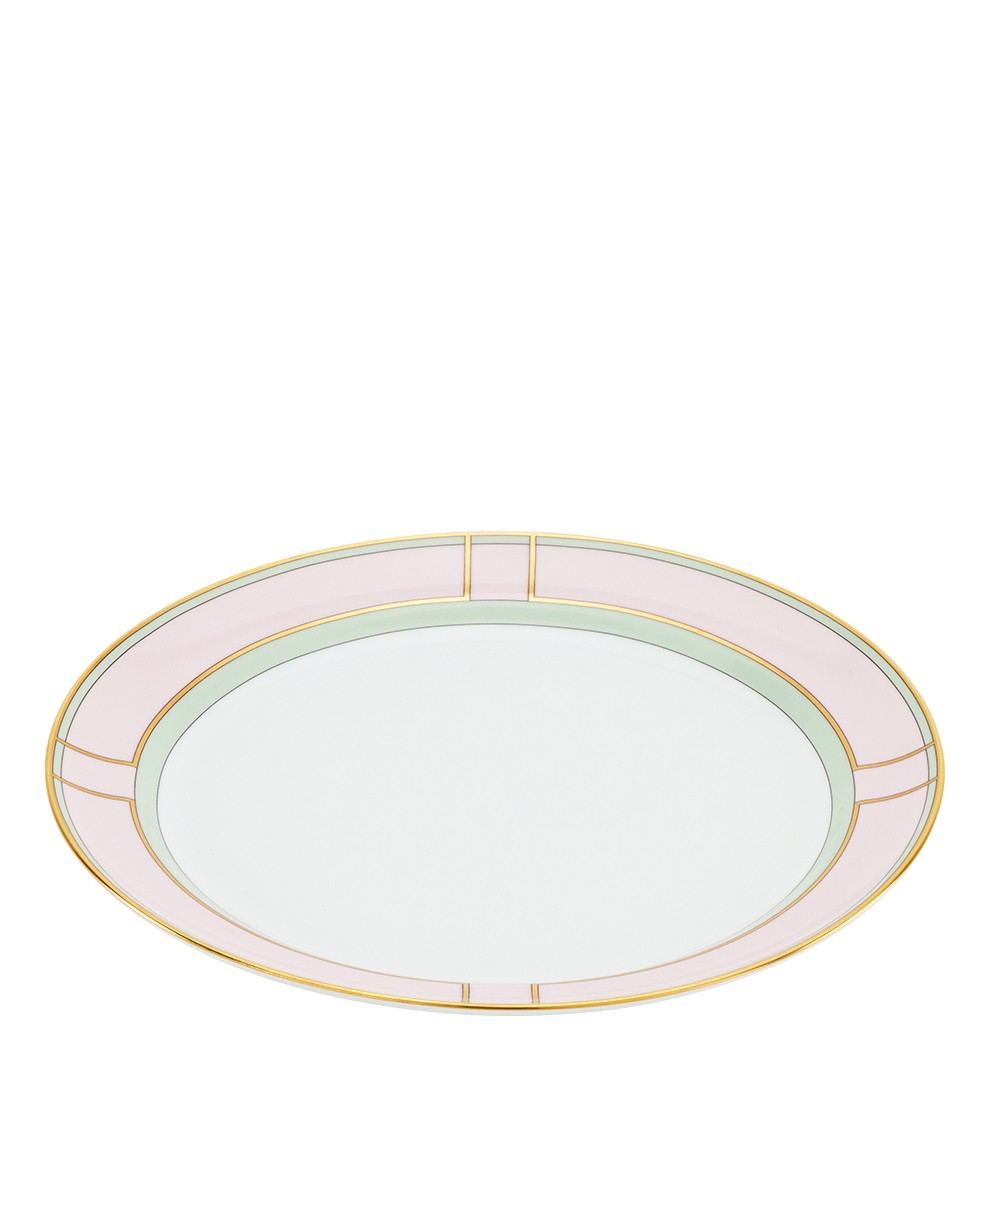 Hier abgebildet die Dinner Plate der Diva Kollektion von Ginori 1735 - RAUM concept store